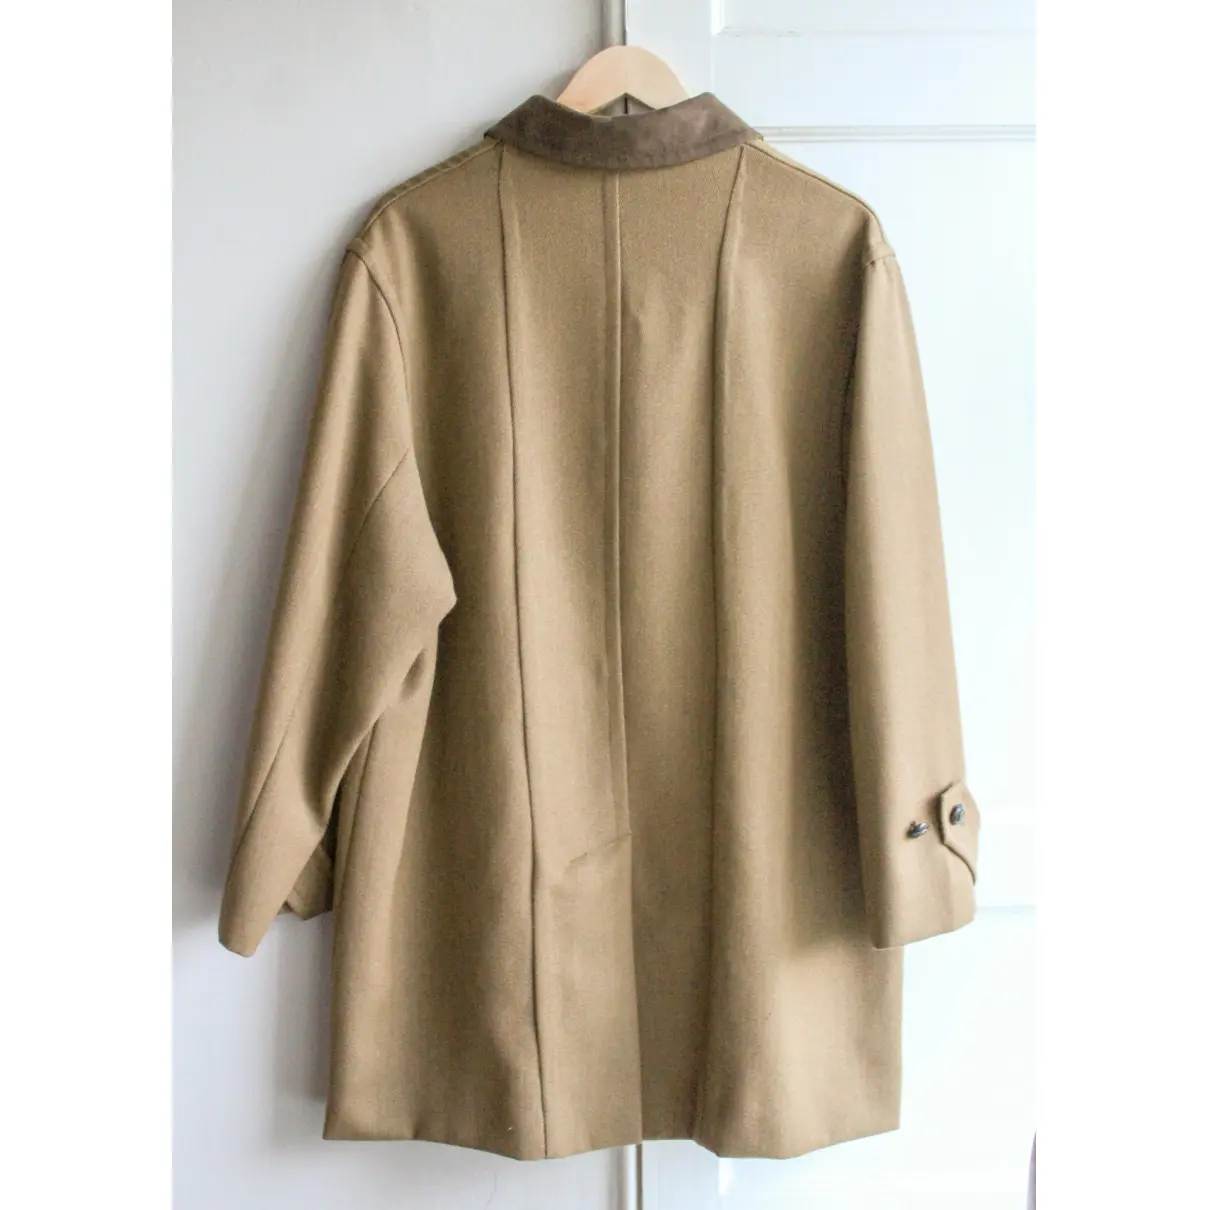 Buy Daks Wool coat online - Vintage